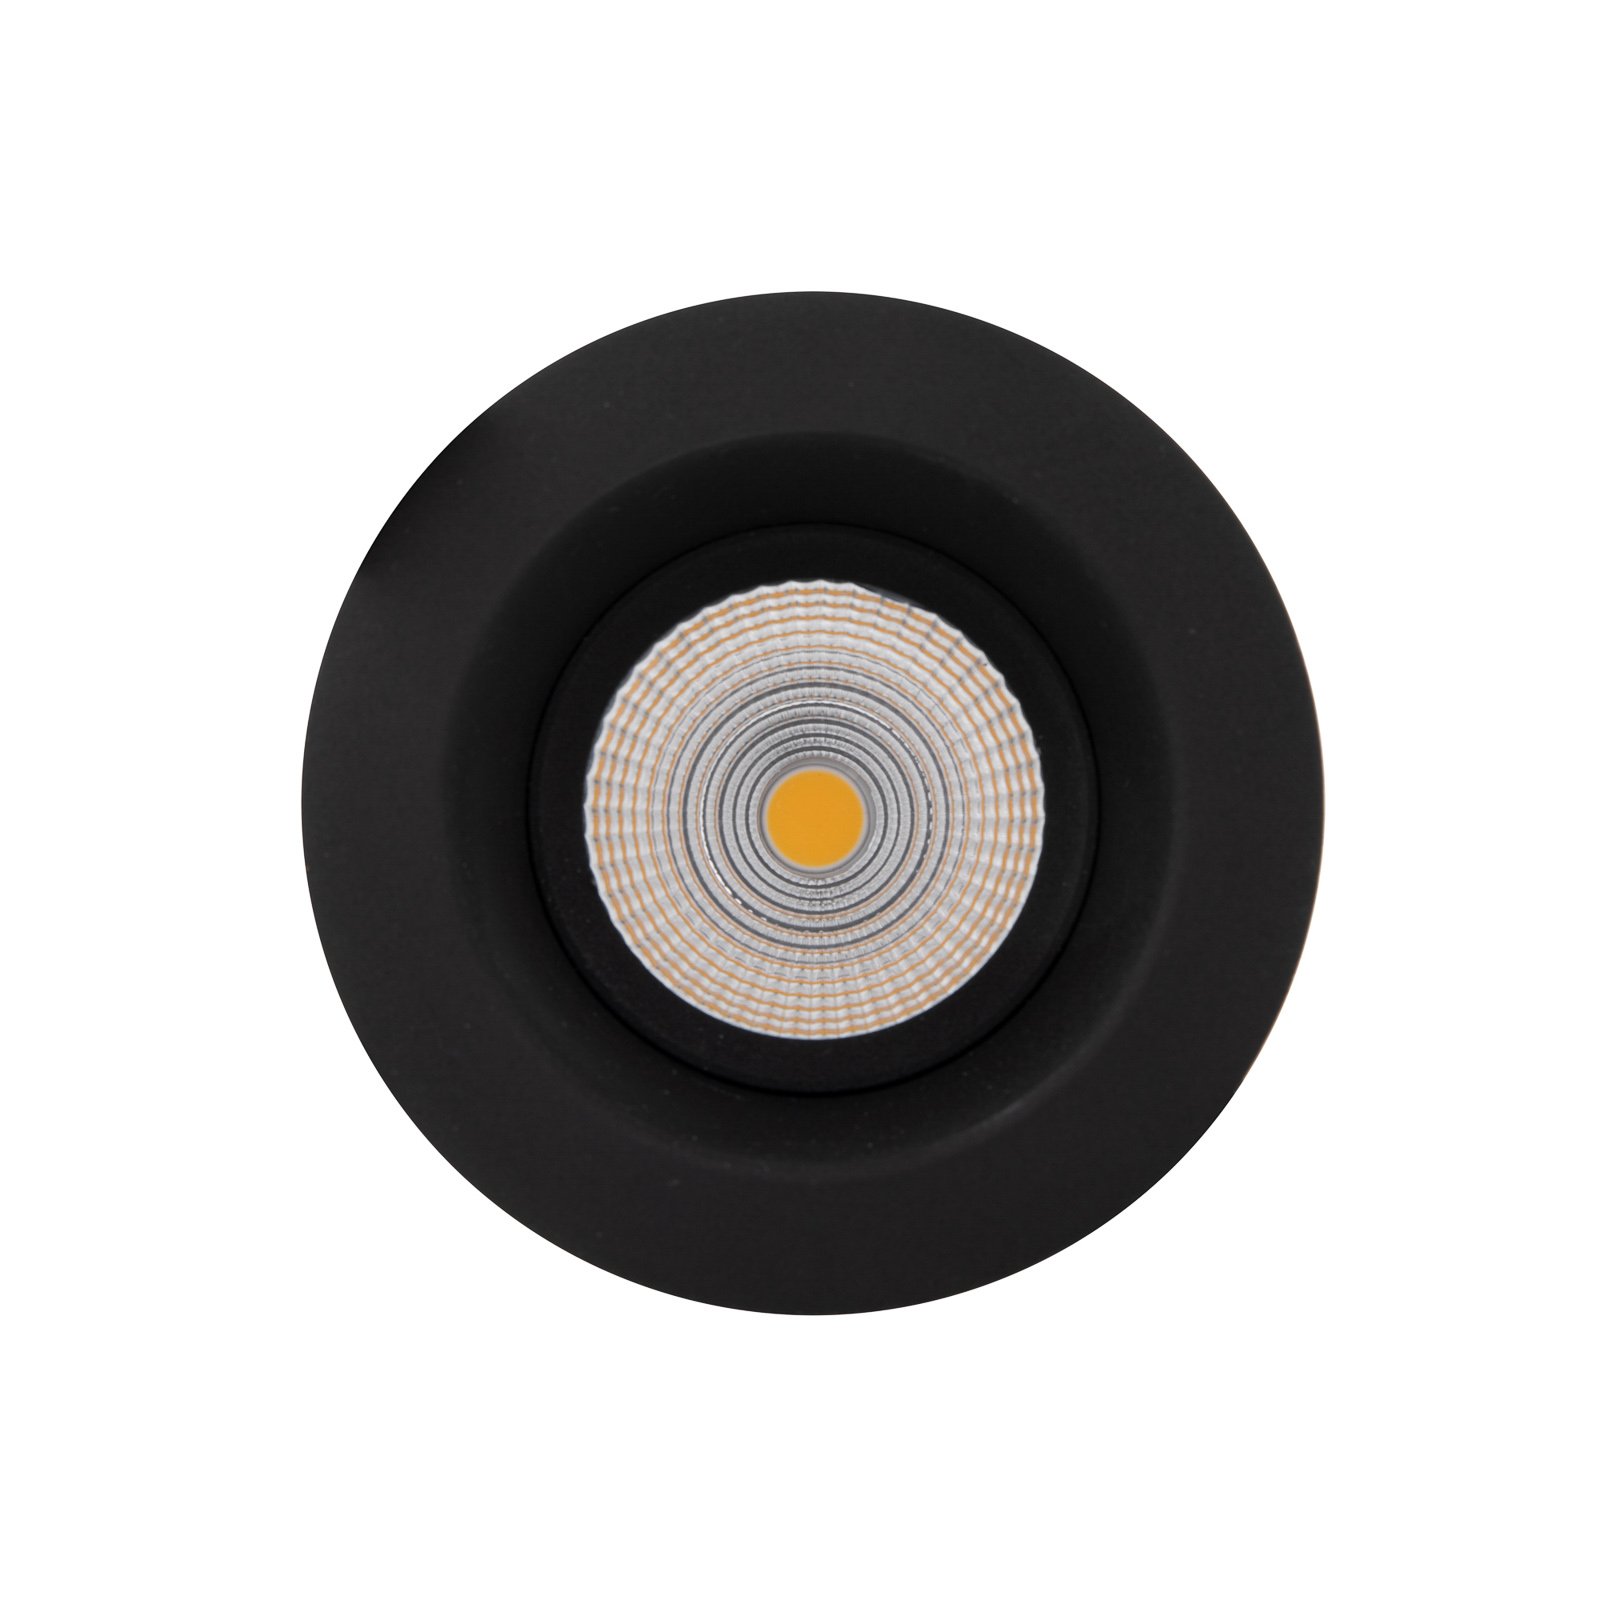 SLC One Soft LED-Einbauspot dim-to-warm schwarz